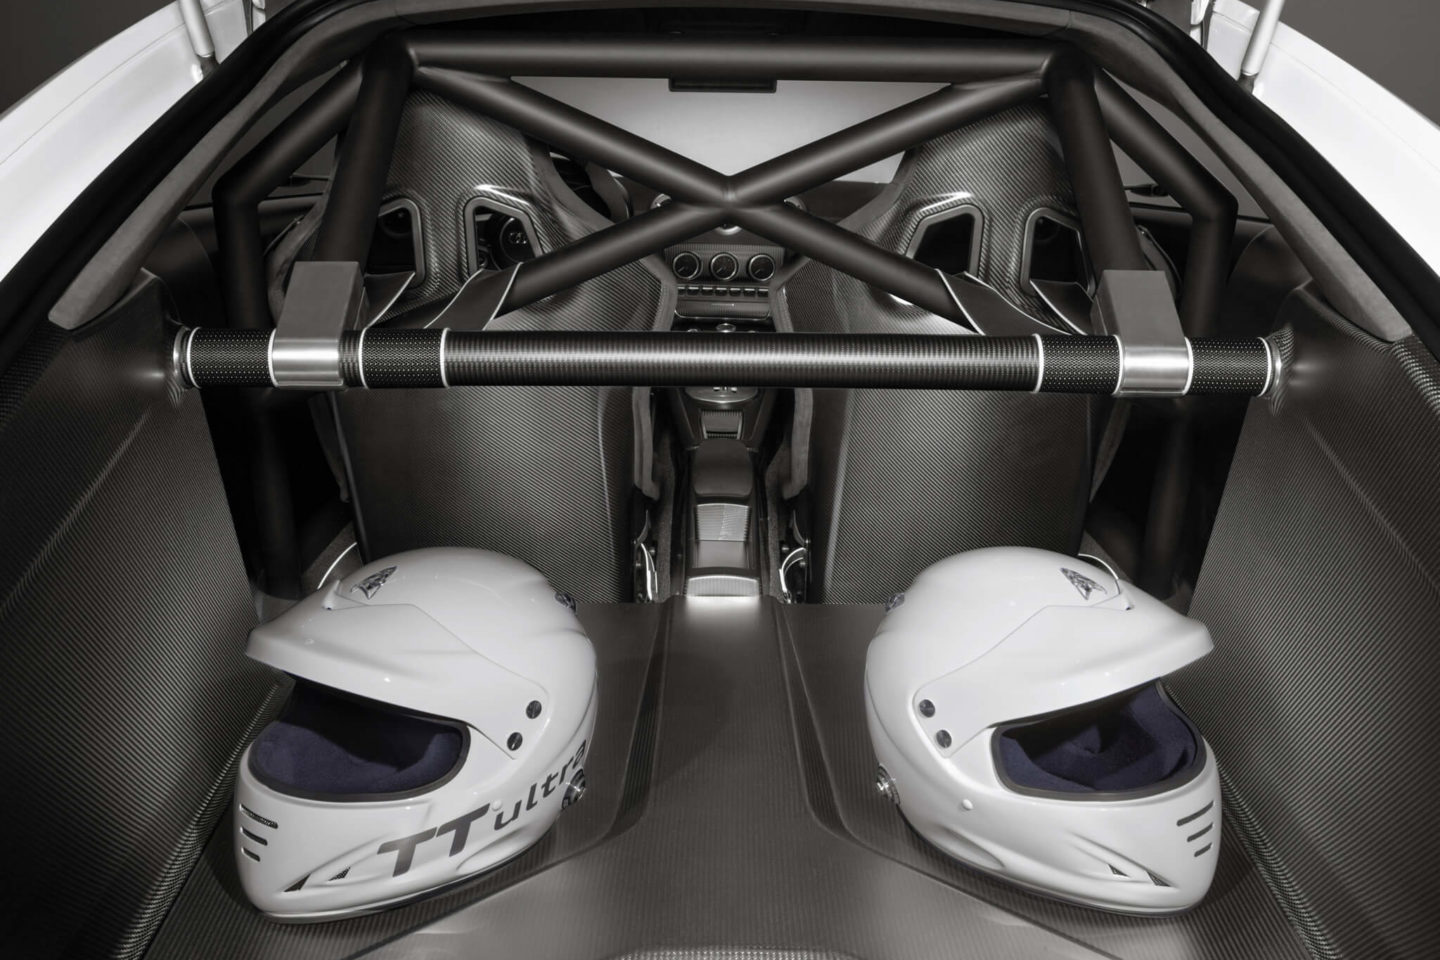 Audi TT Ultra Quattro concept